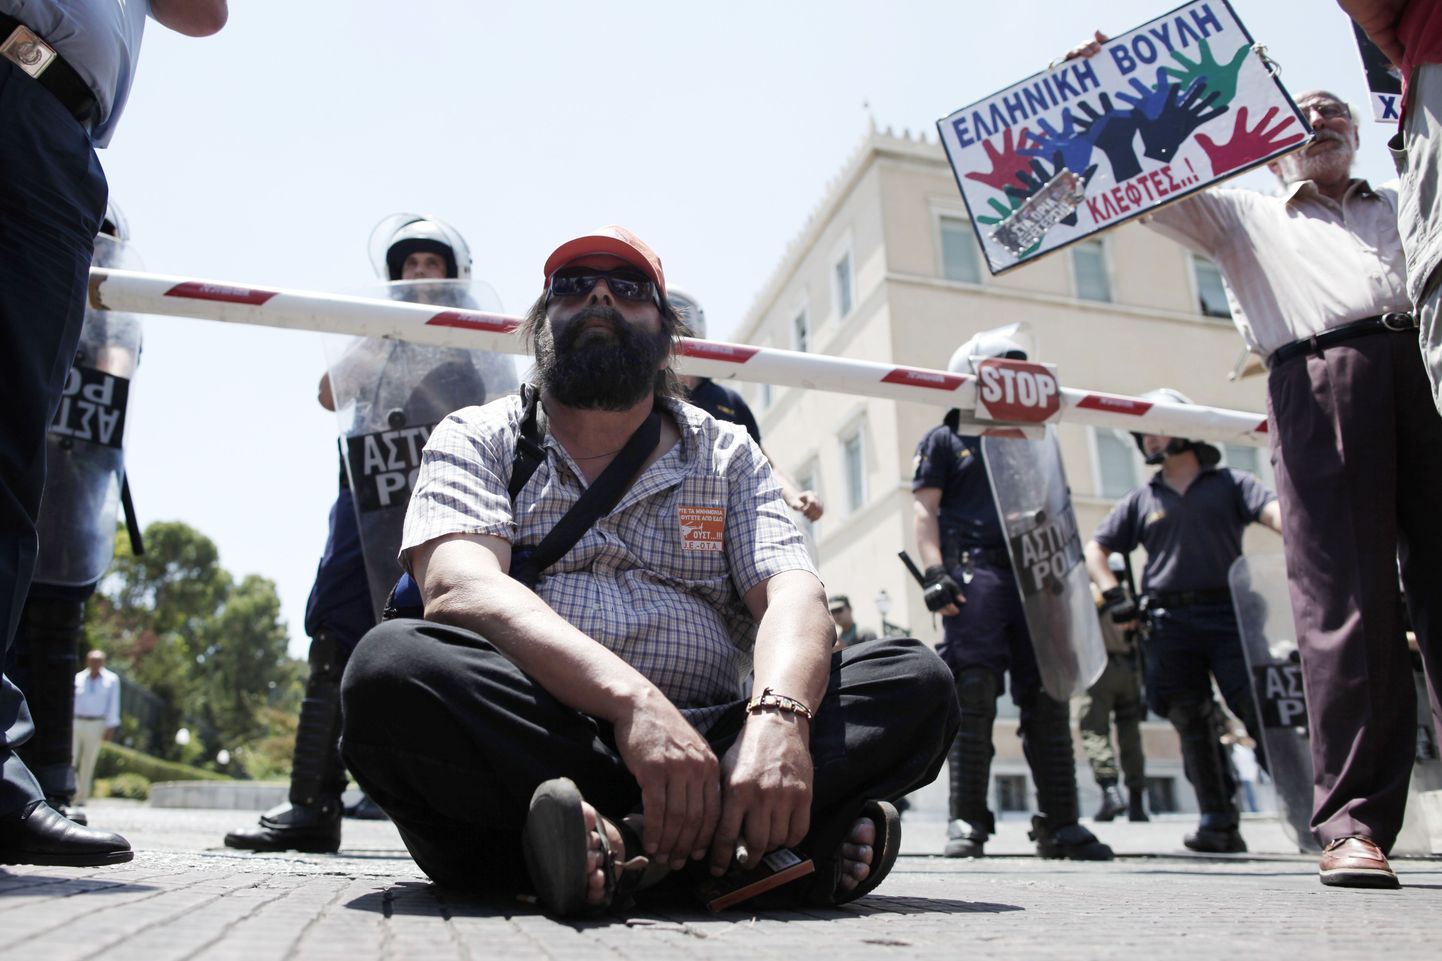 Kreeka koondatud riigiteenistujad alustasid parlamendi ees proteste 2013. aastal. Nüüd on nad sihile jõudmas: esimesed võetakse tagasi tööle.